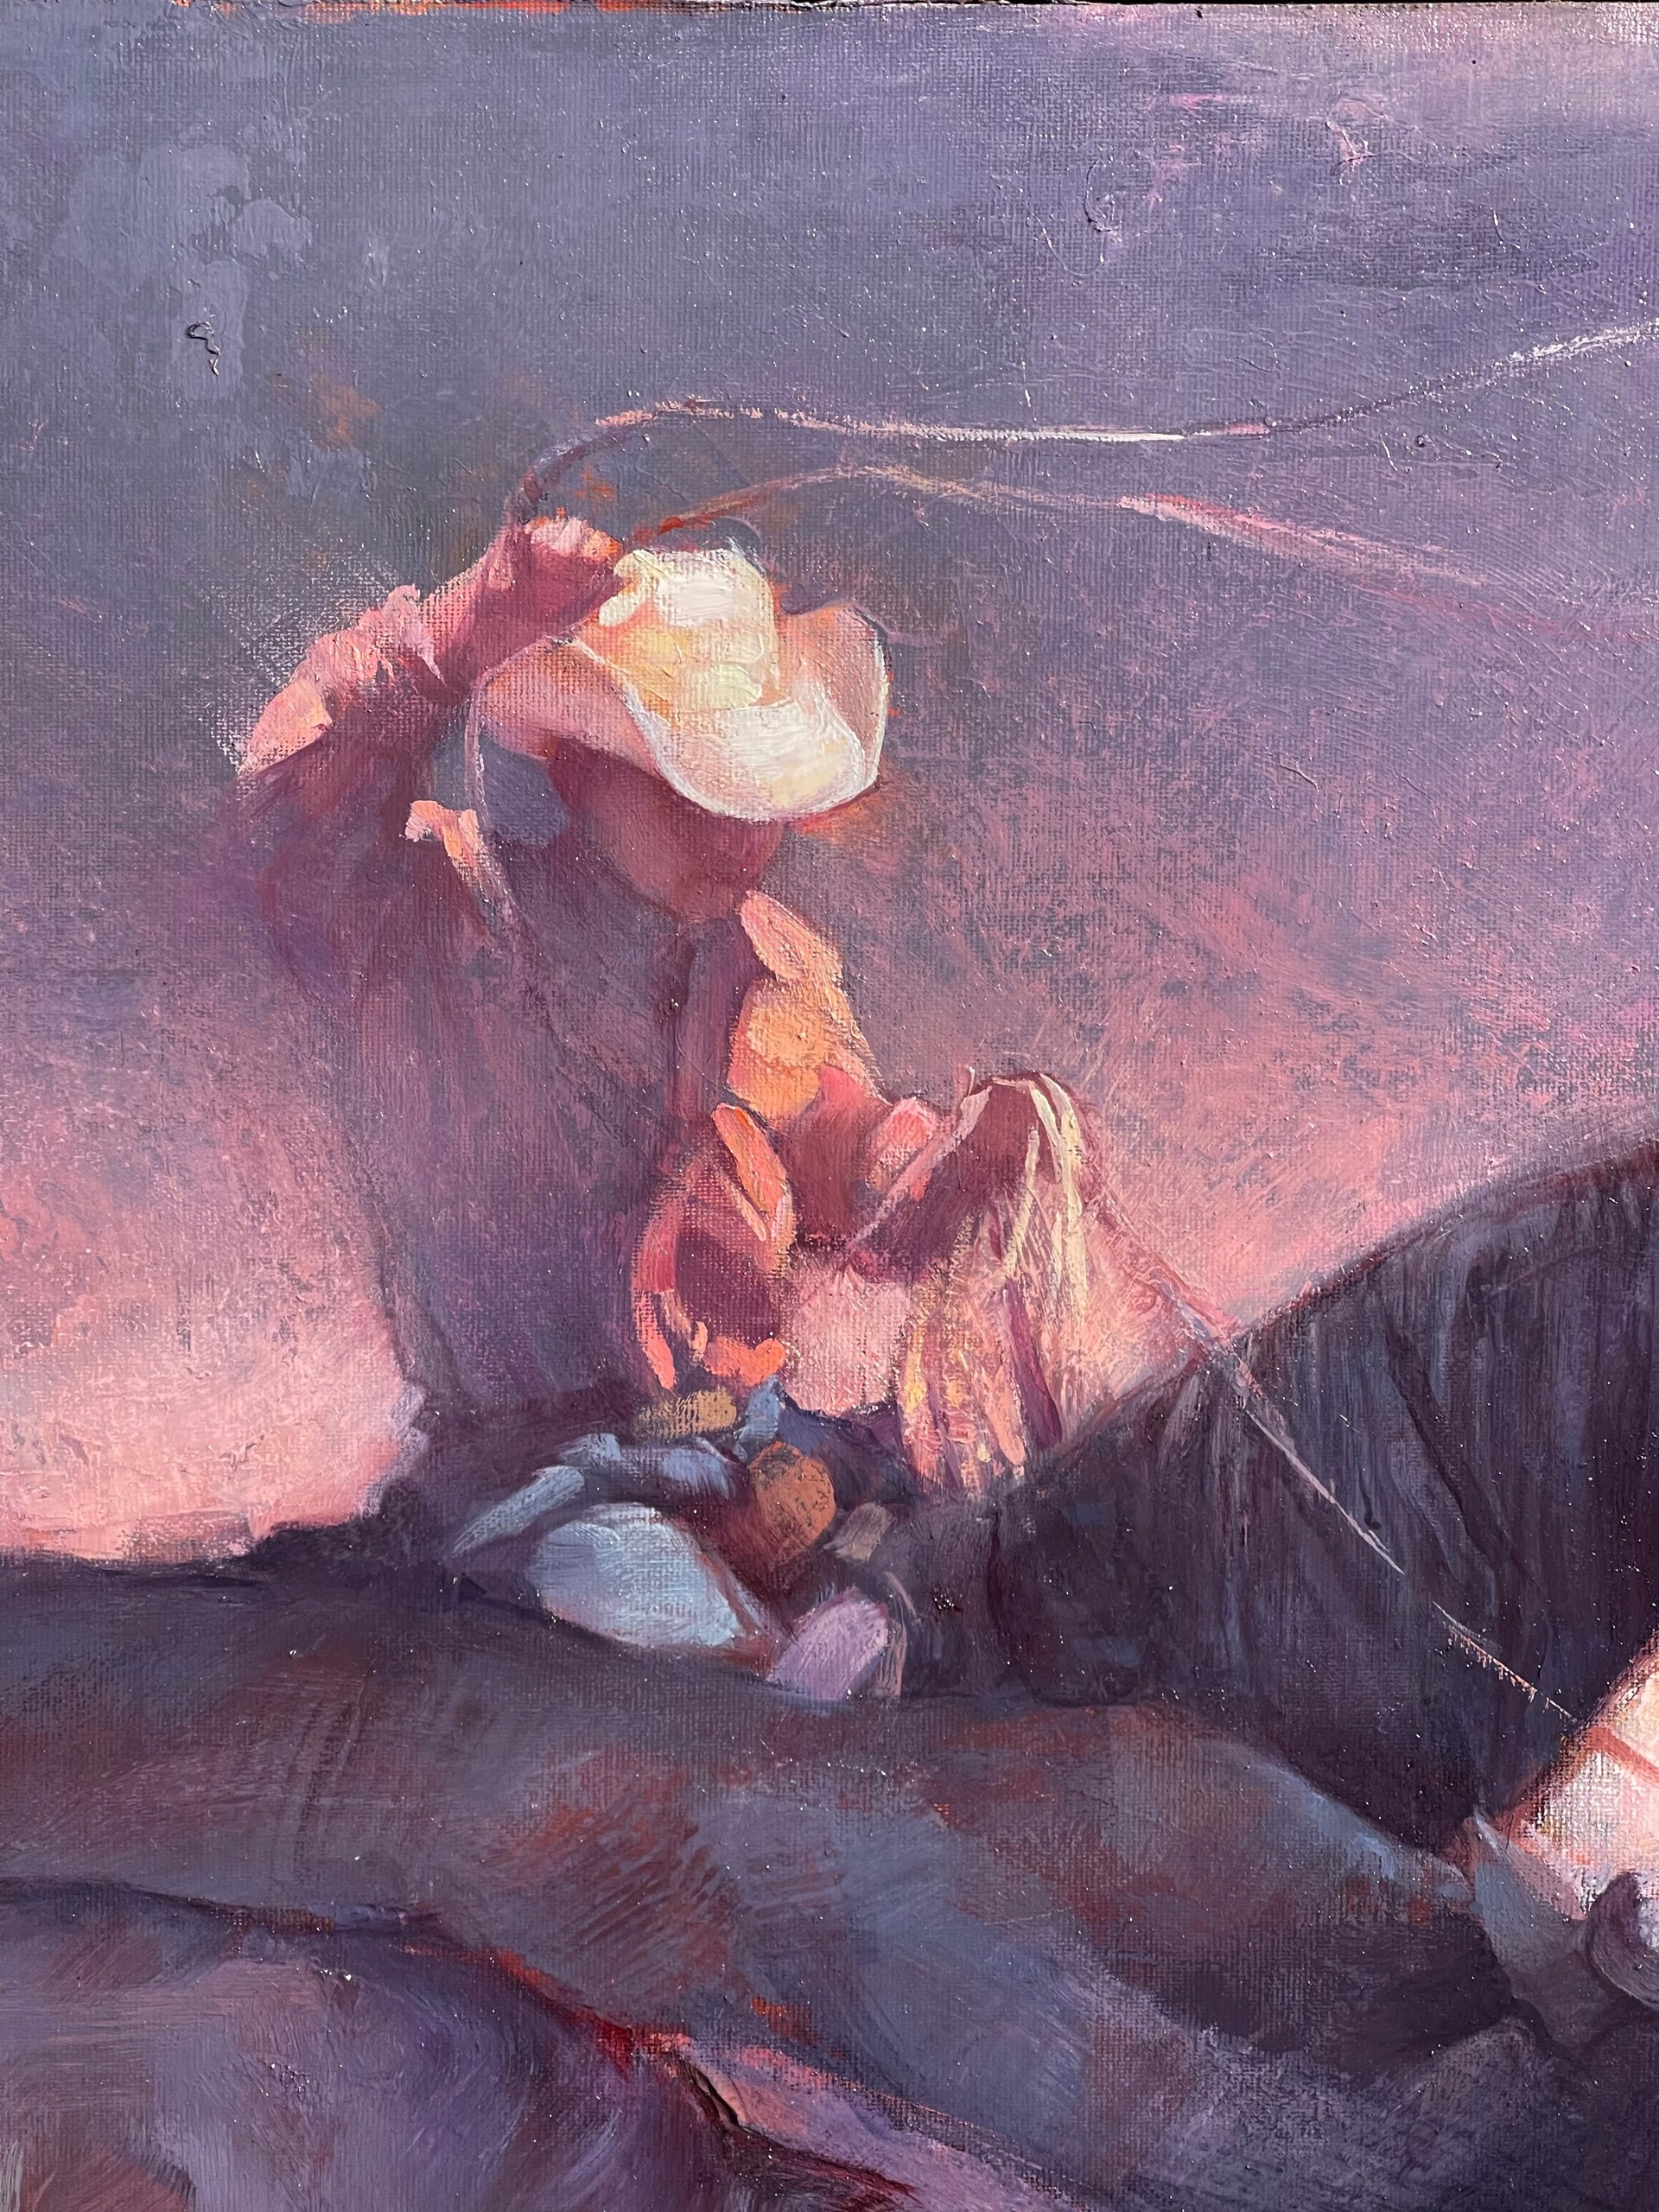 A Boy & His Pony by Jill Soukup